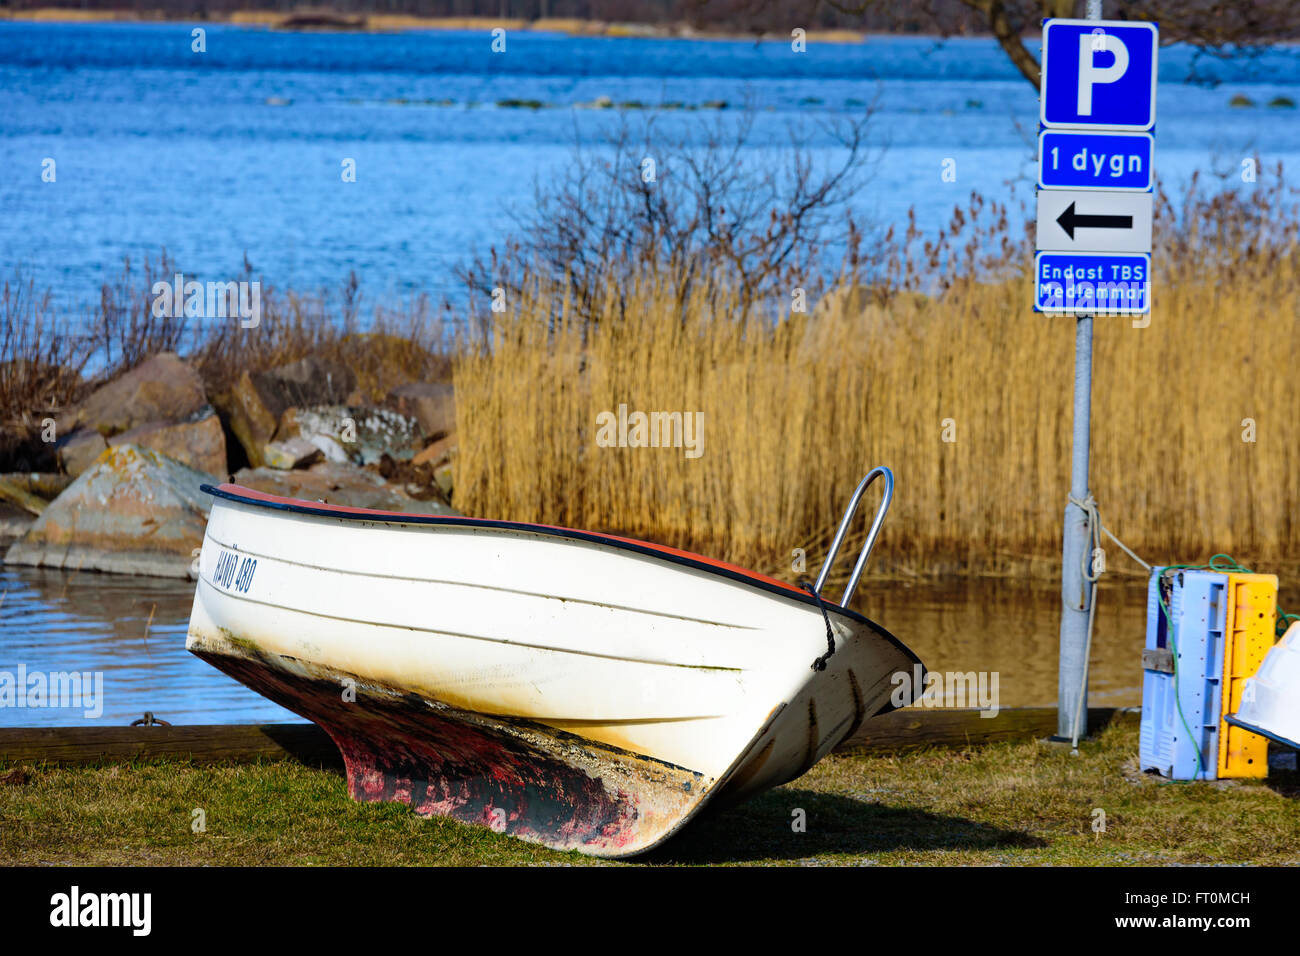 Torhamn, Suède - 18 mars 2016 : un petit bateau à moteur hors-bord garé à une place de parking sur le terrain. La mer en arrière-plan. Banque D'Images